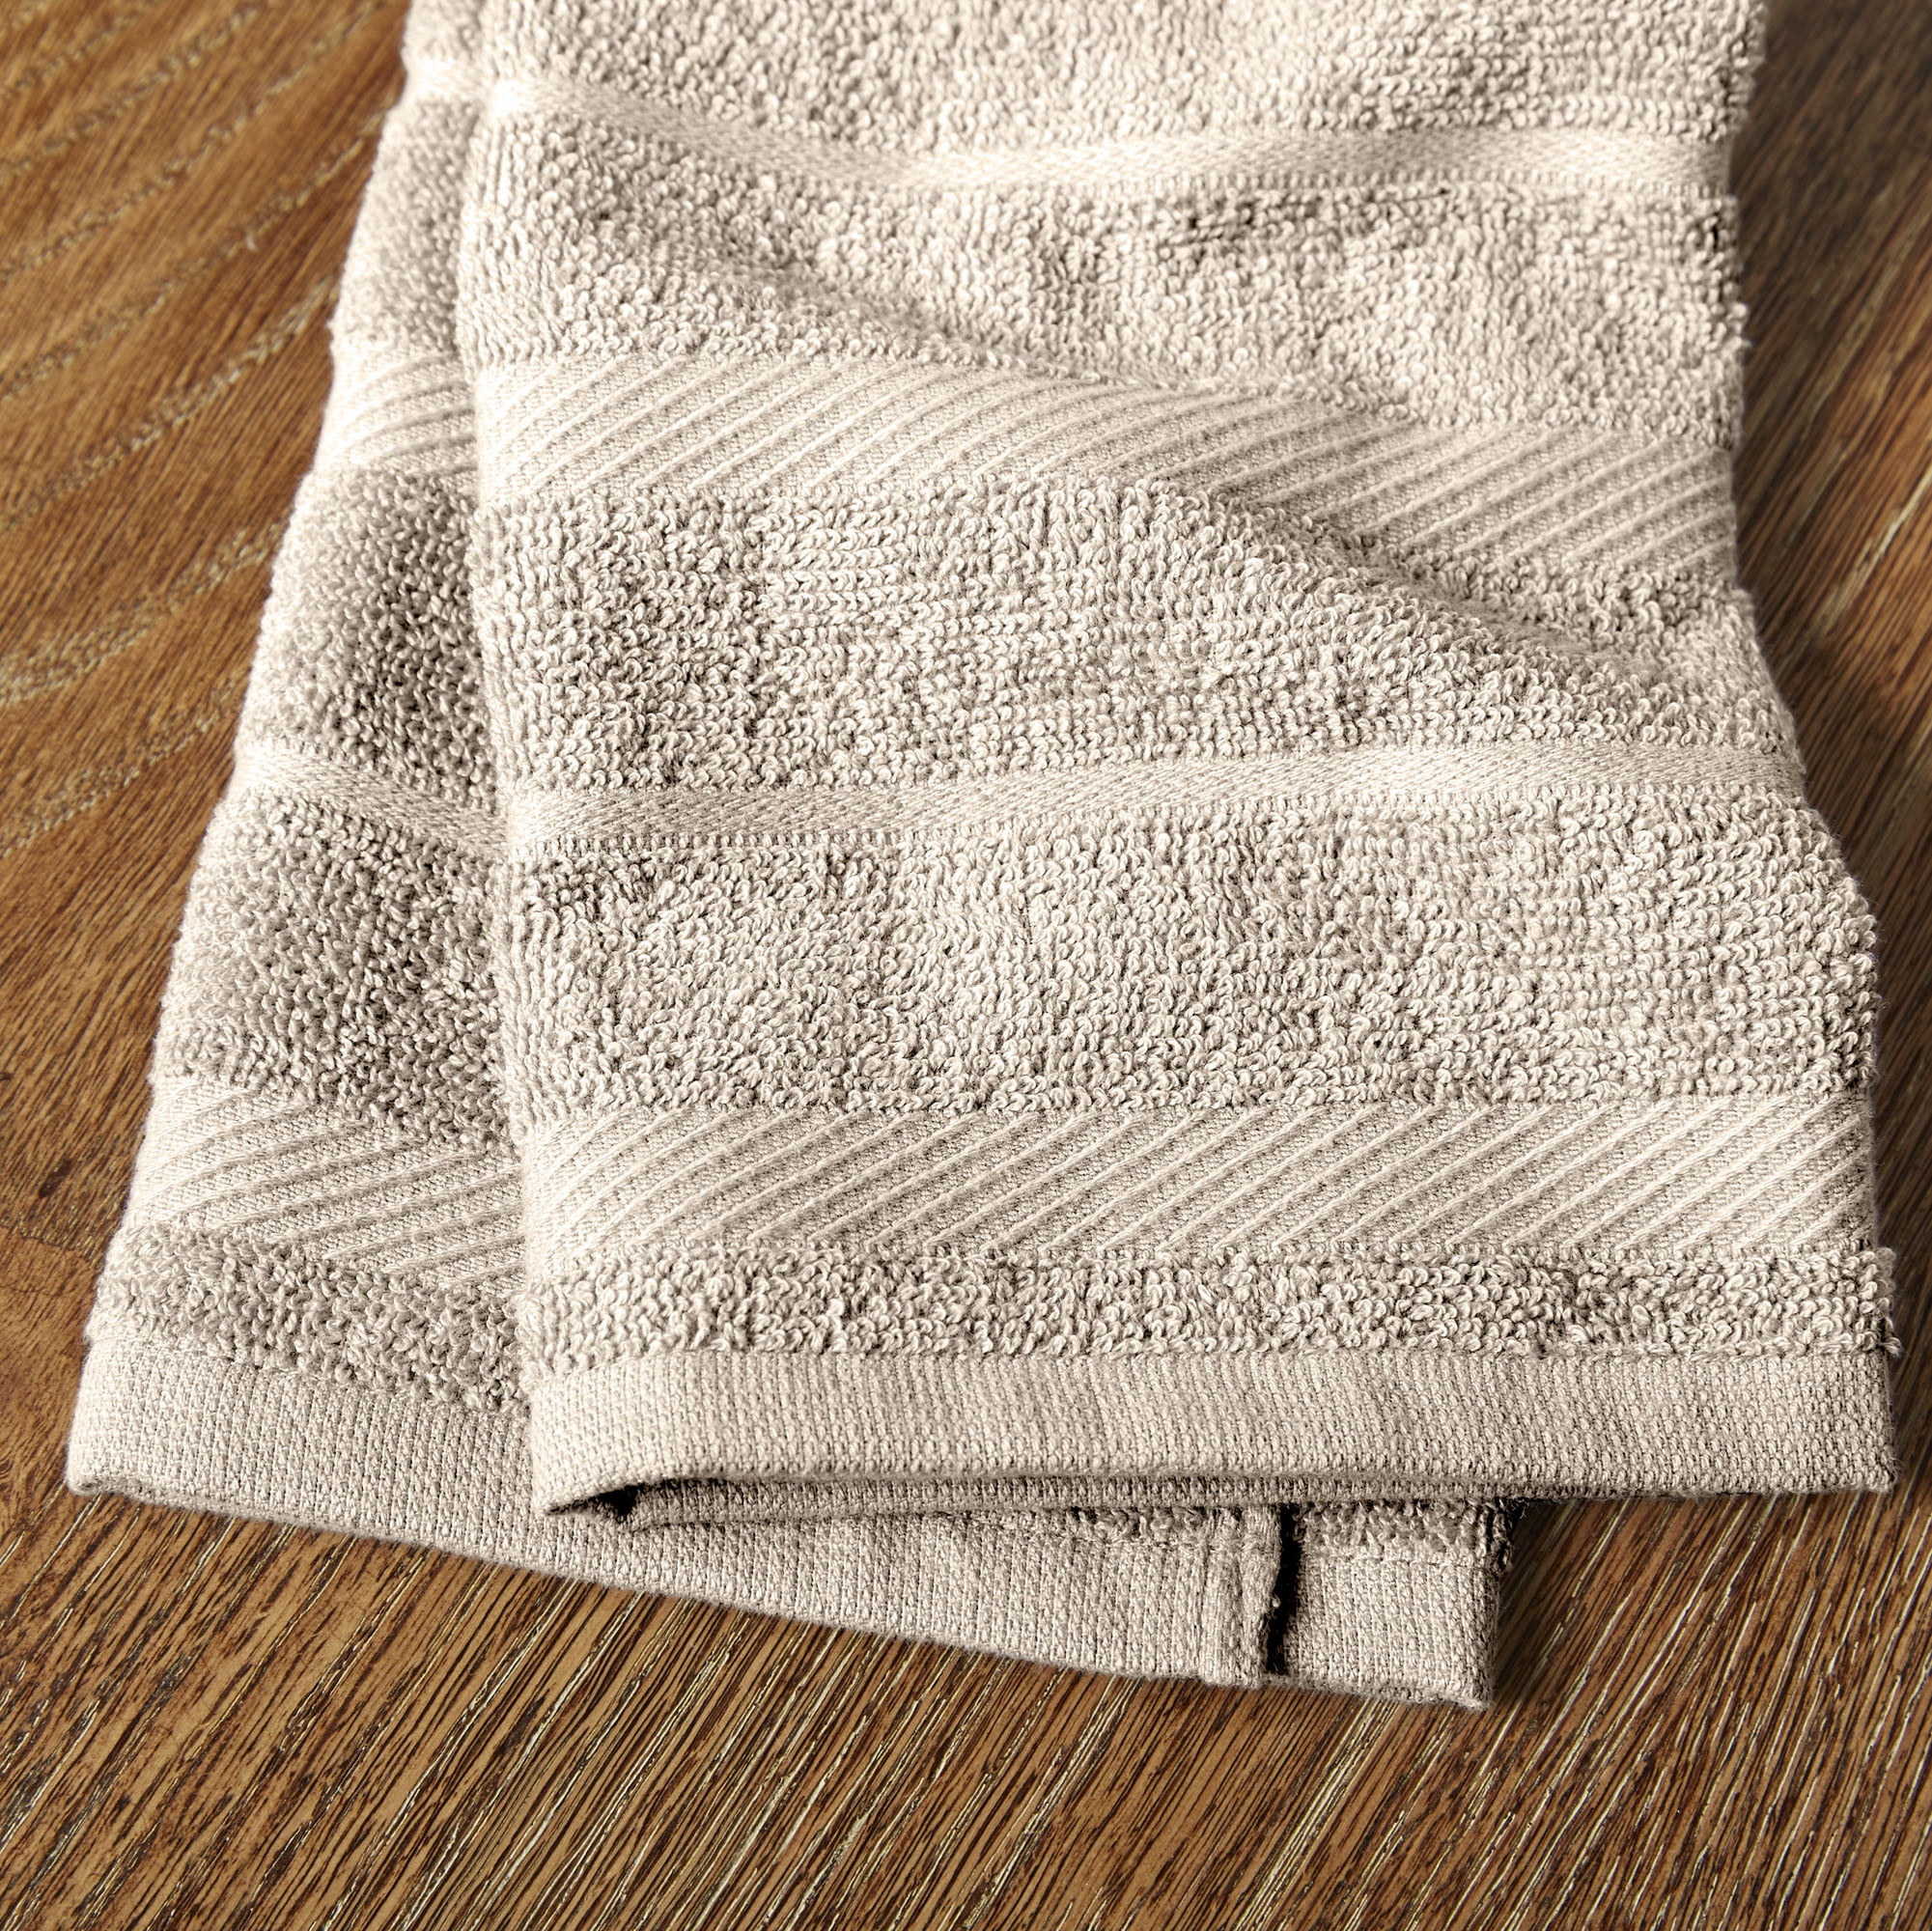 New KitchenAid Tea-Towels x2 Black with White Squares – Wild